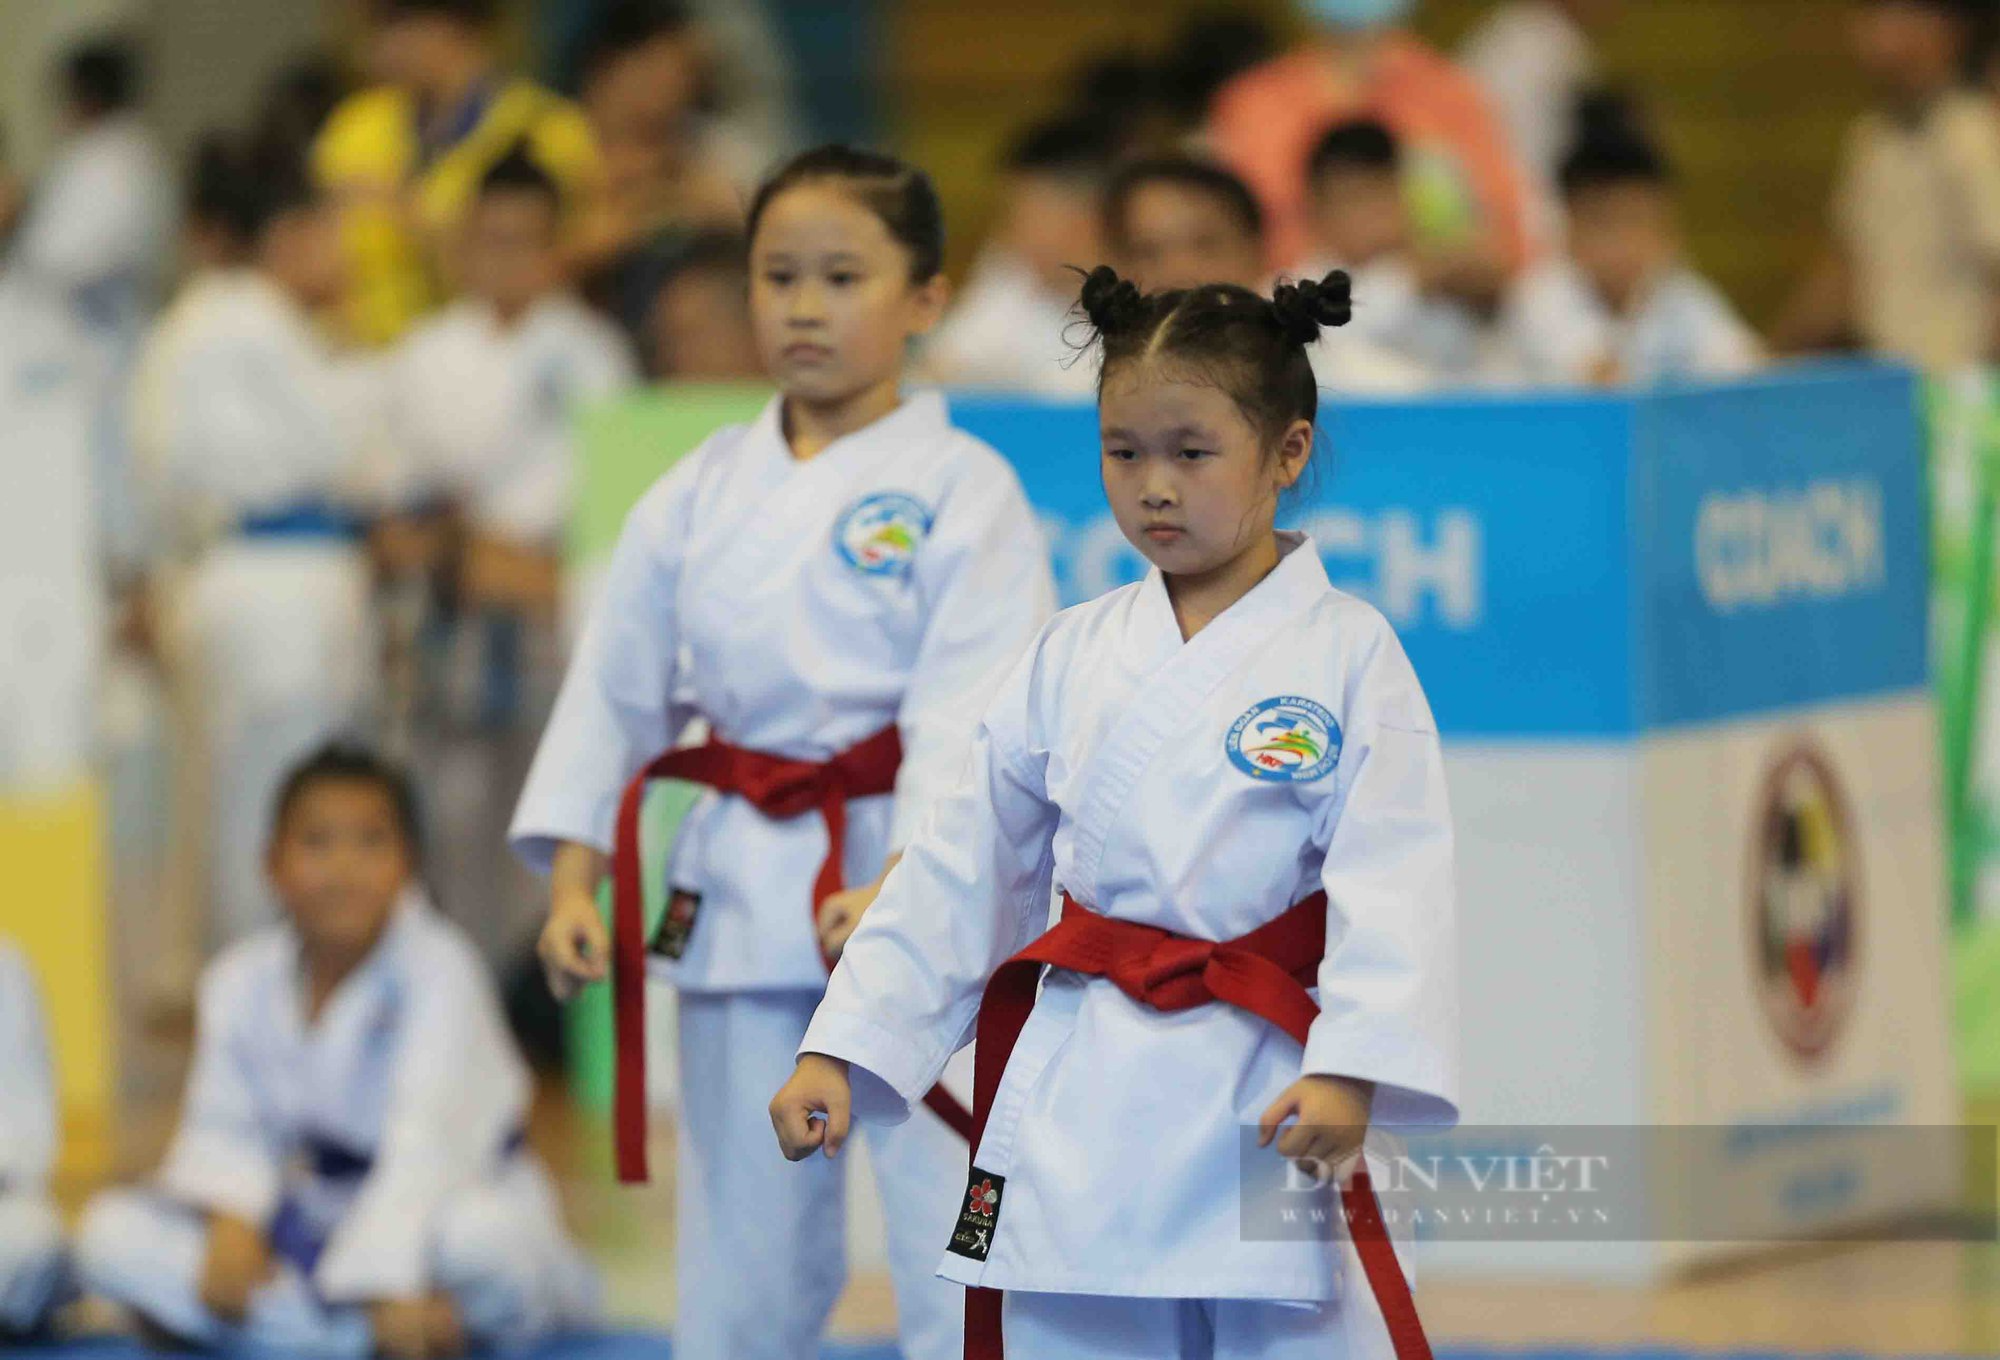 Ấn tượng những màn trình diễn siêu cute của các võ sĩ karate nhí - Ảnh 5.